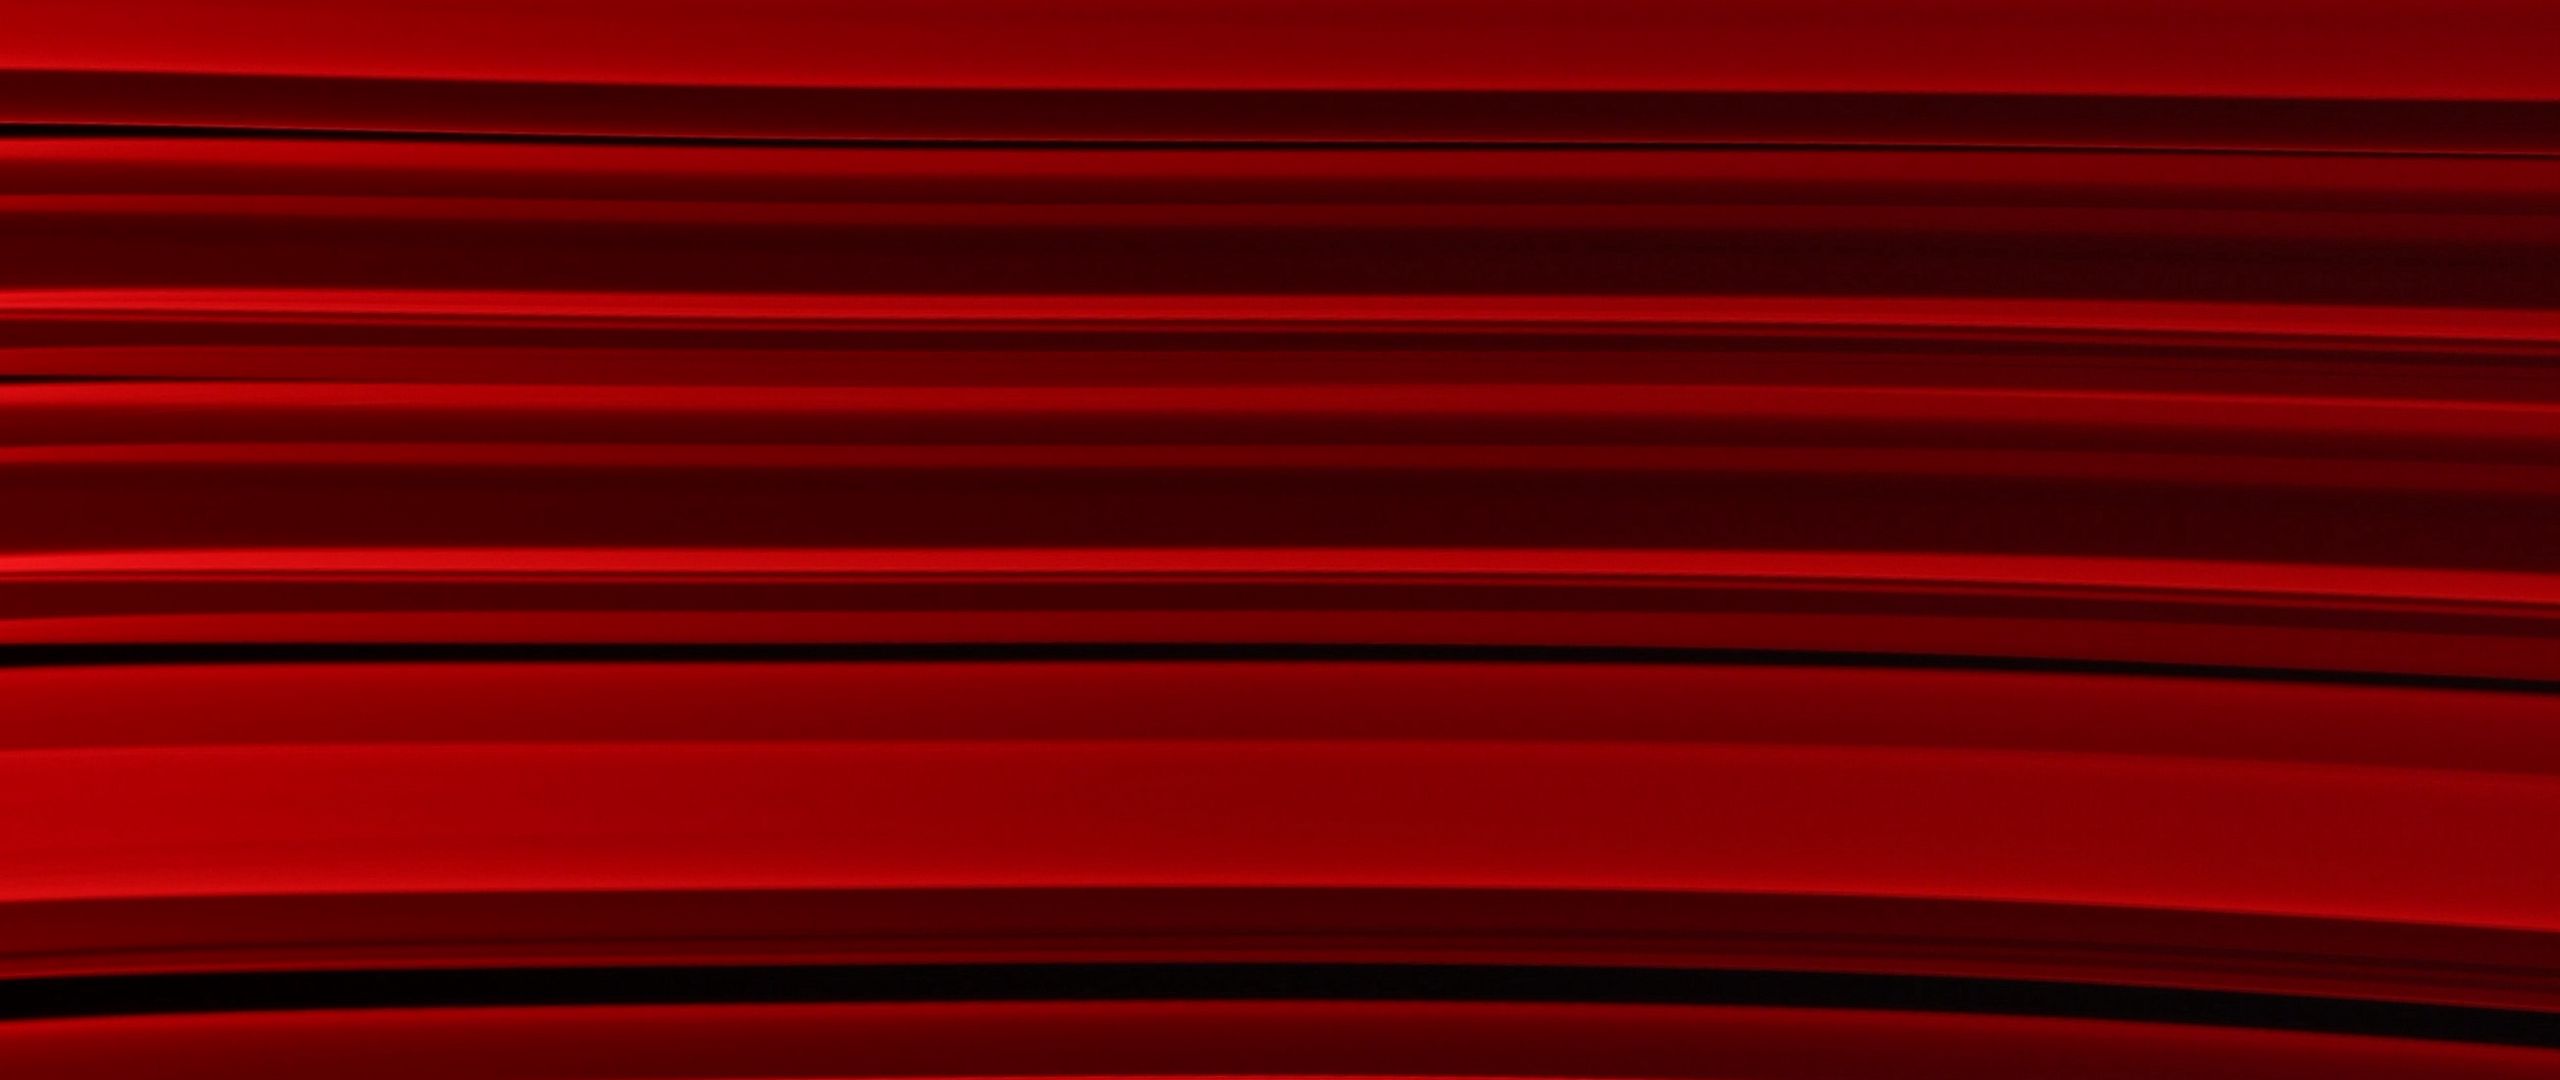 Lines, stripes, red, texture - abstract design: Bạn đang tìm kiếm những hình ảnh về thiết kế trừu tượng đầy màu sắc và độc đáo? Hãy đến với những hình ảnh về Lines, stripes, red, texture - một mẫu thiết kế mang đến sự pha trộn hoàn hảo giữa nét đứng và nét ngang, kết hợp bởi texture độc đáo.